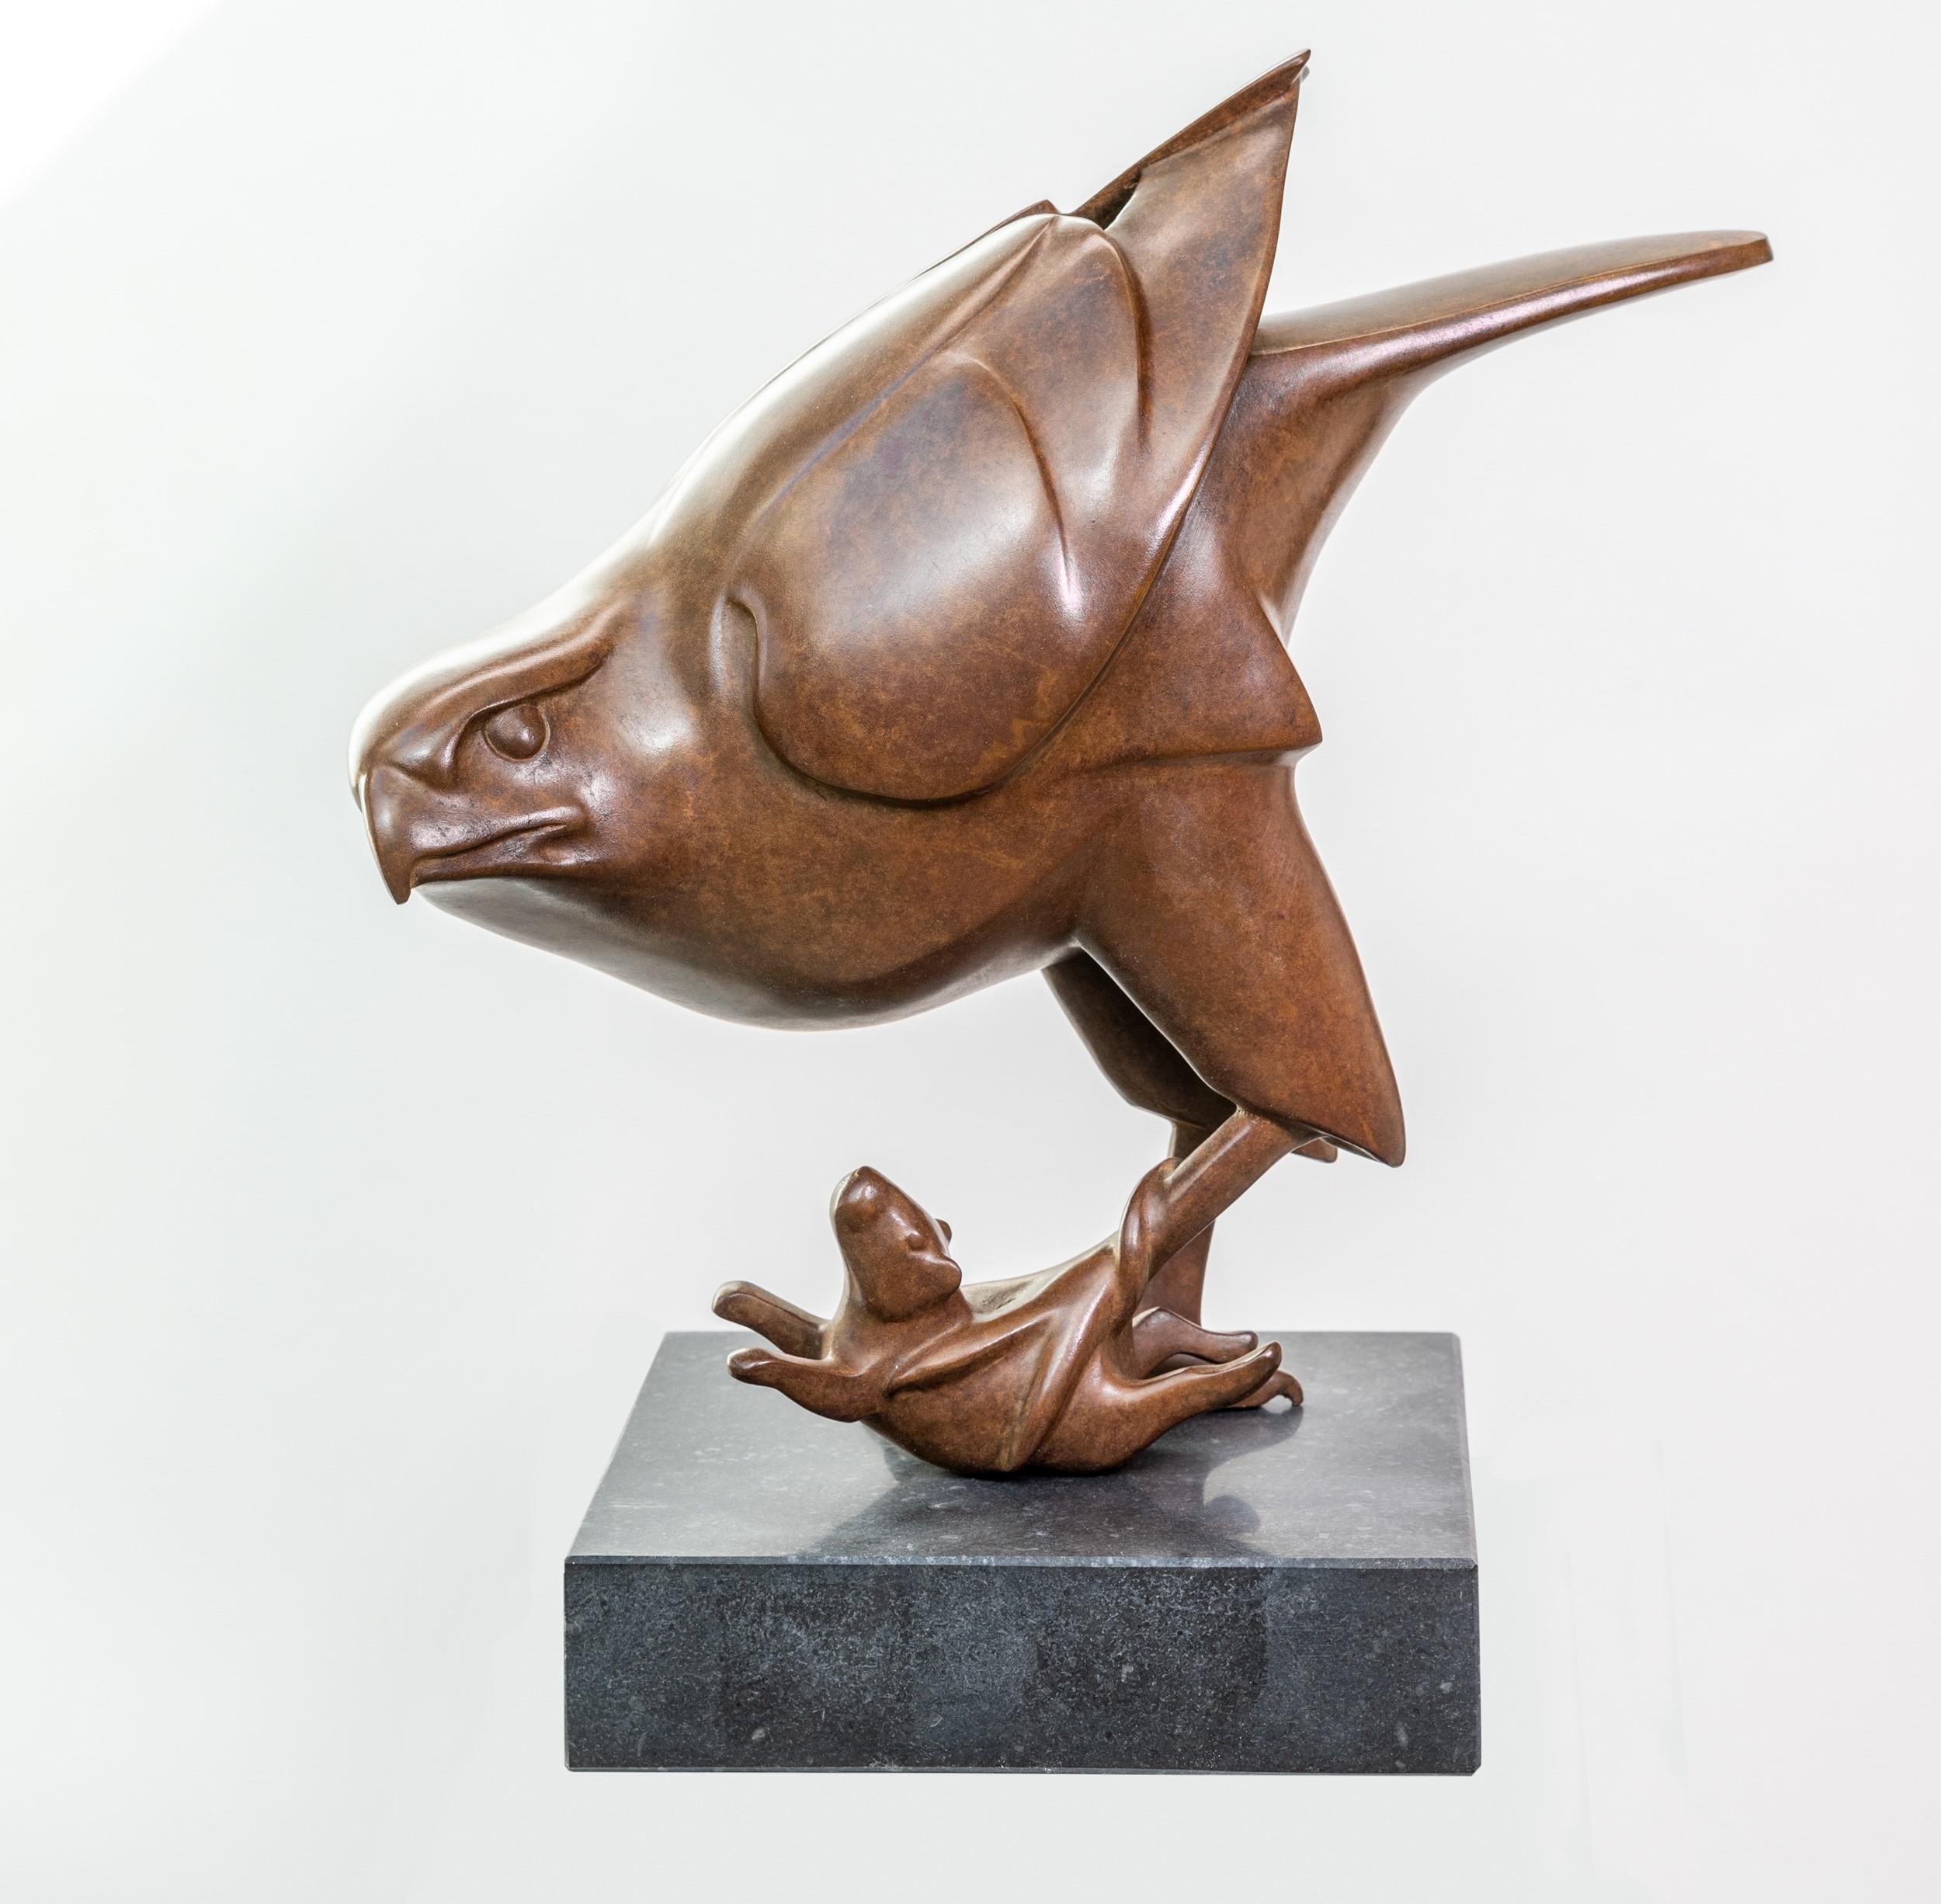 Evert den Hartog Figurative Sculpture - Roofvogel met Muis Prey Bird with Mouse Bronze Sculpture Animal Bird In Stock 